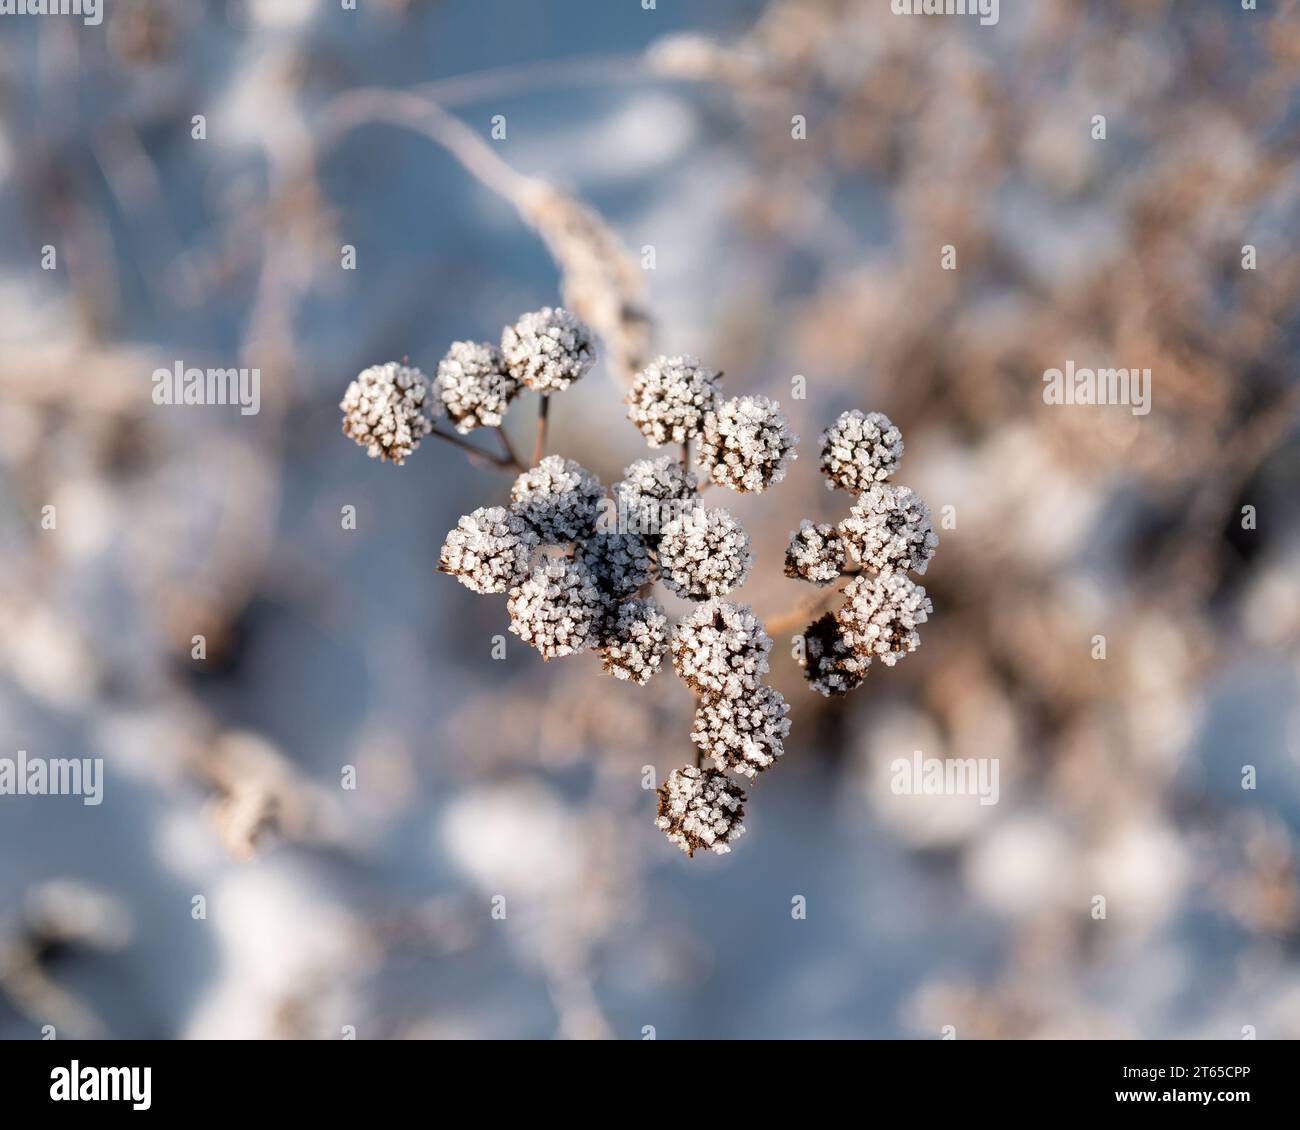 Suszone rośliny W zimowych klimatach Stockfoto